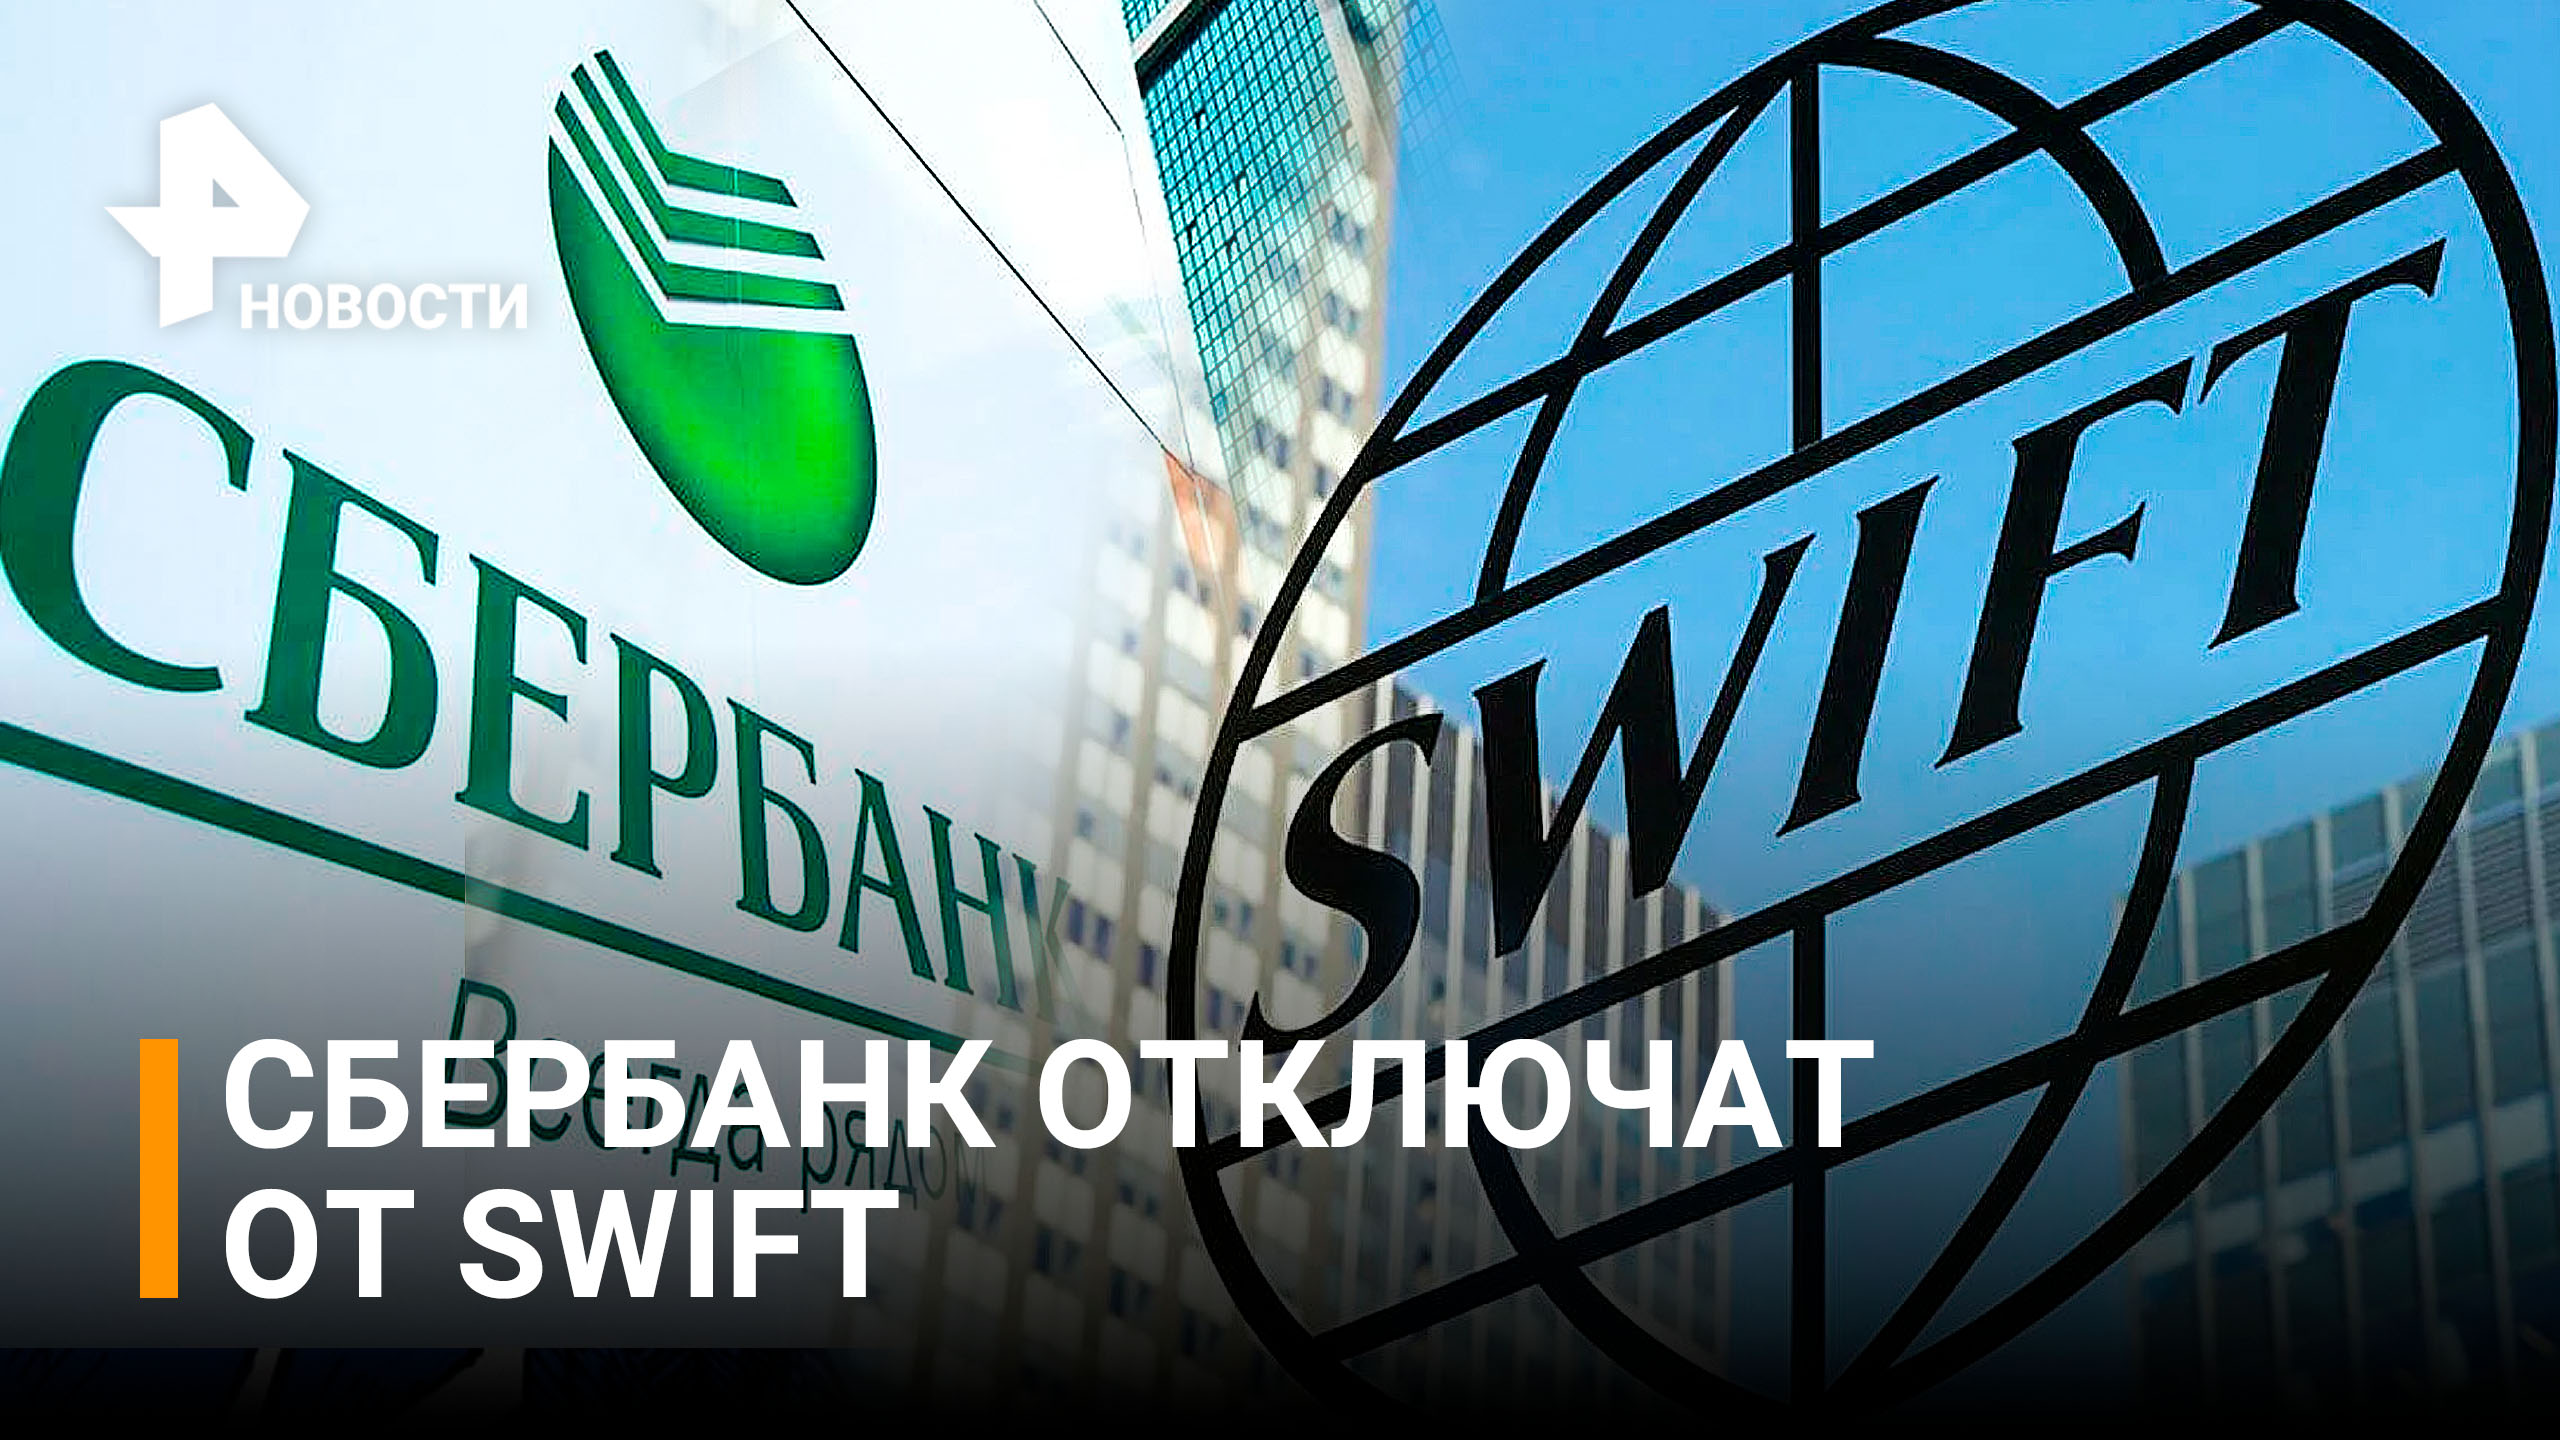 Сбербанк отключат от Swift: новые подробность шестого пакета санкций / РЕН Новости